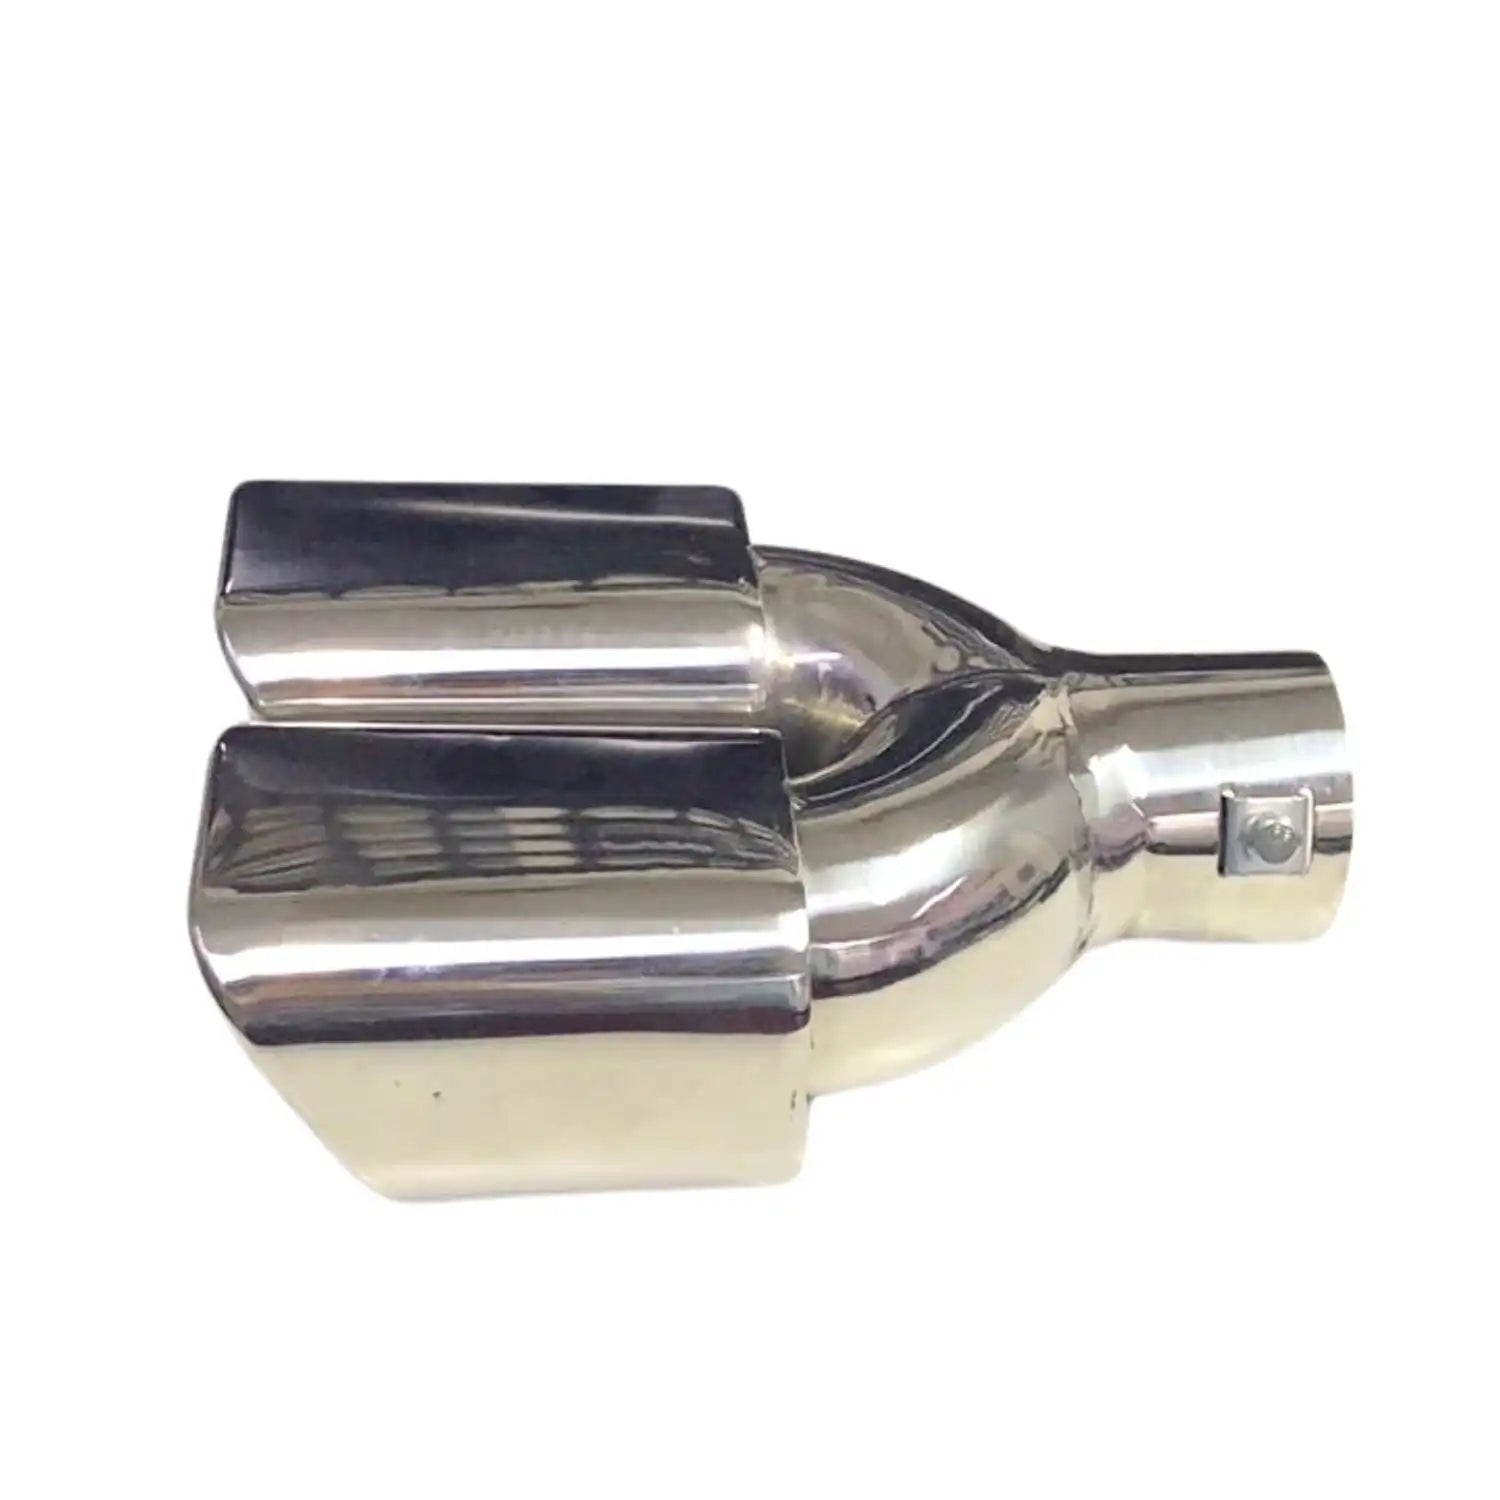 Universal Car Exhaust Muffler Tip - Silver